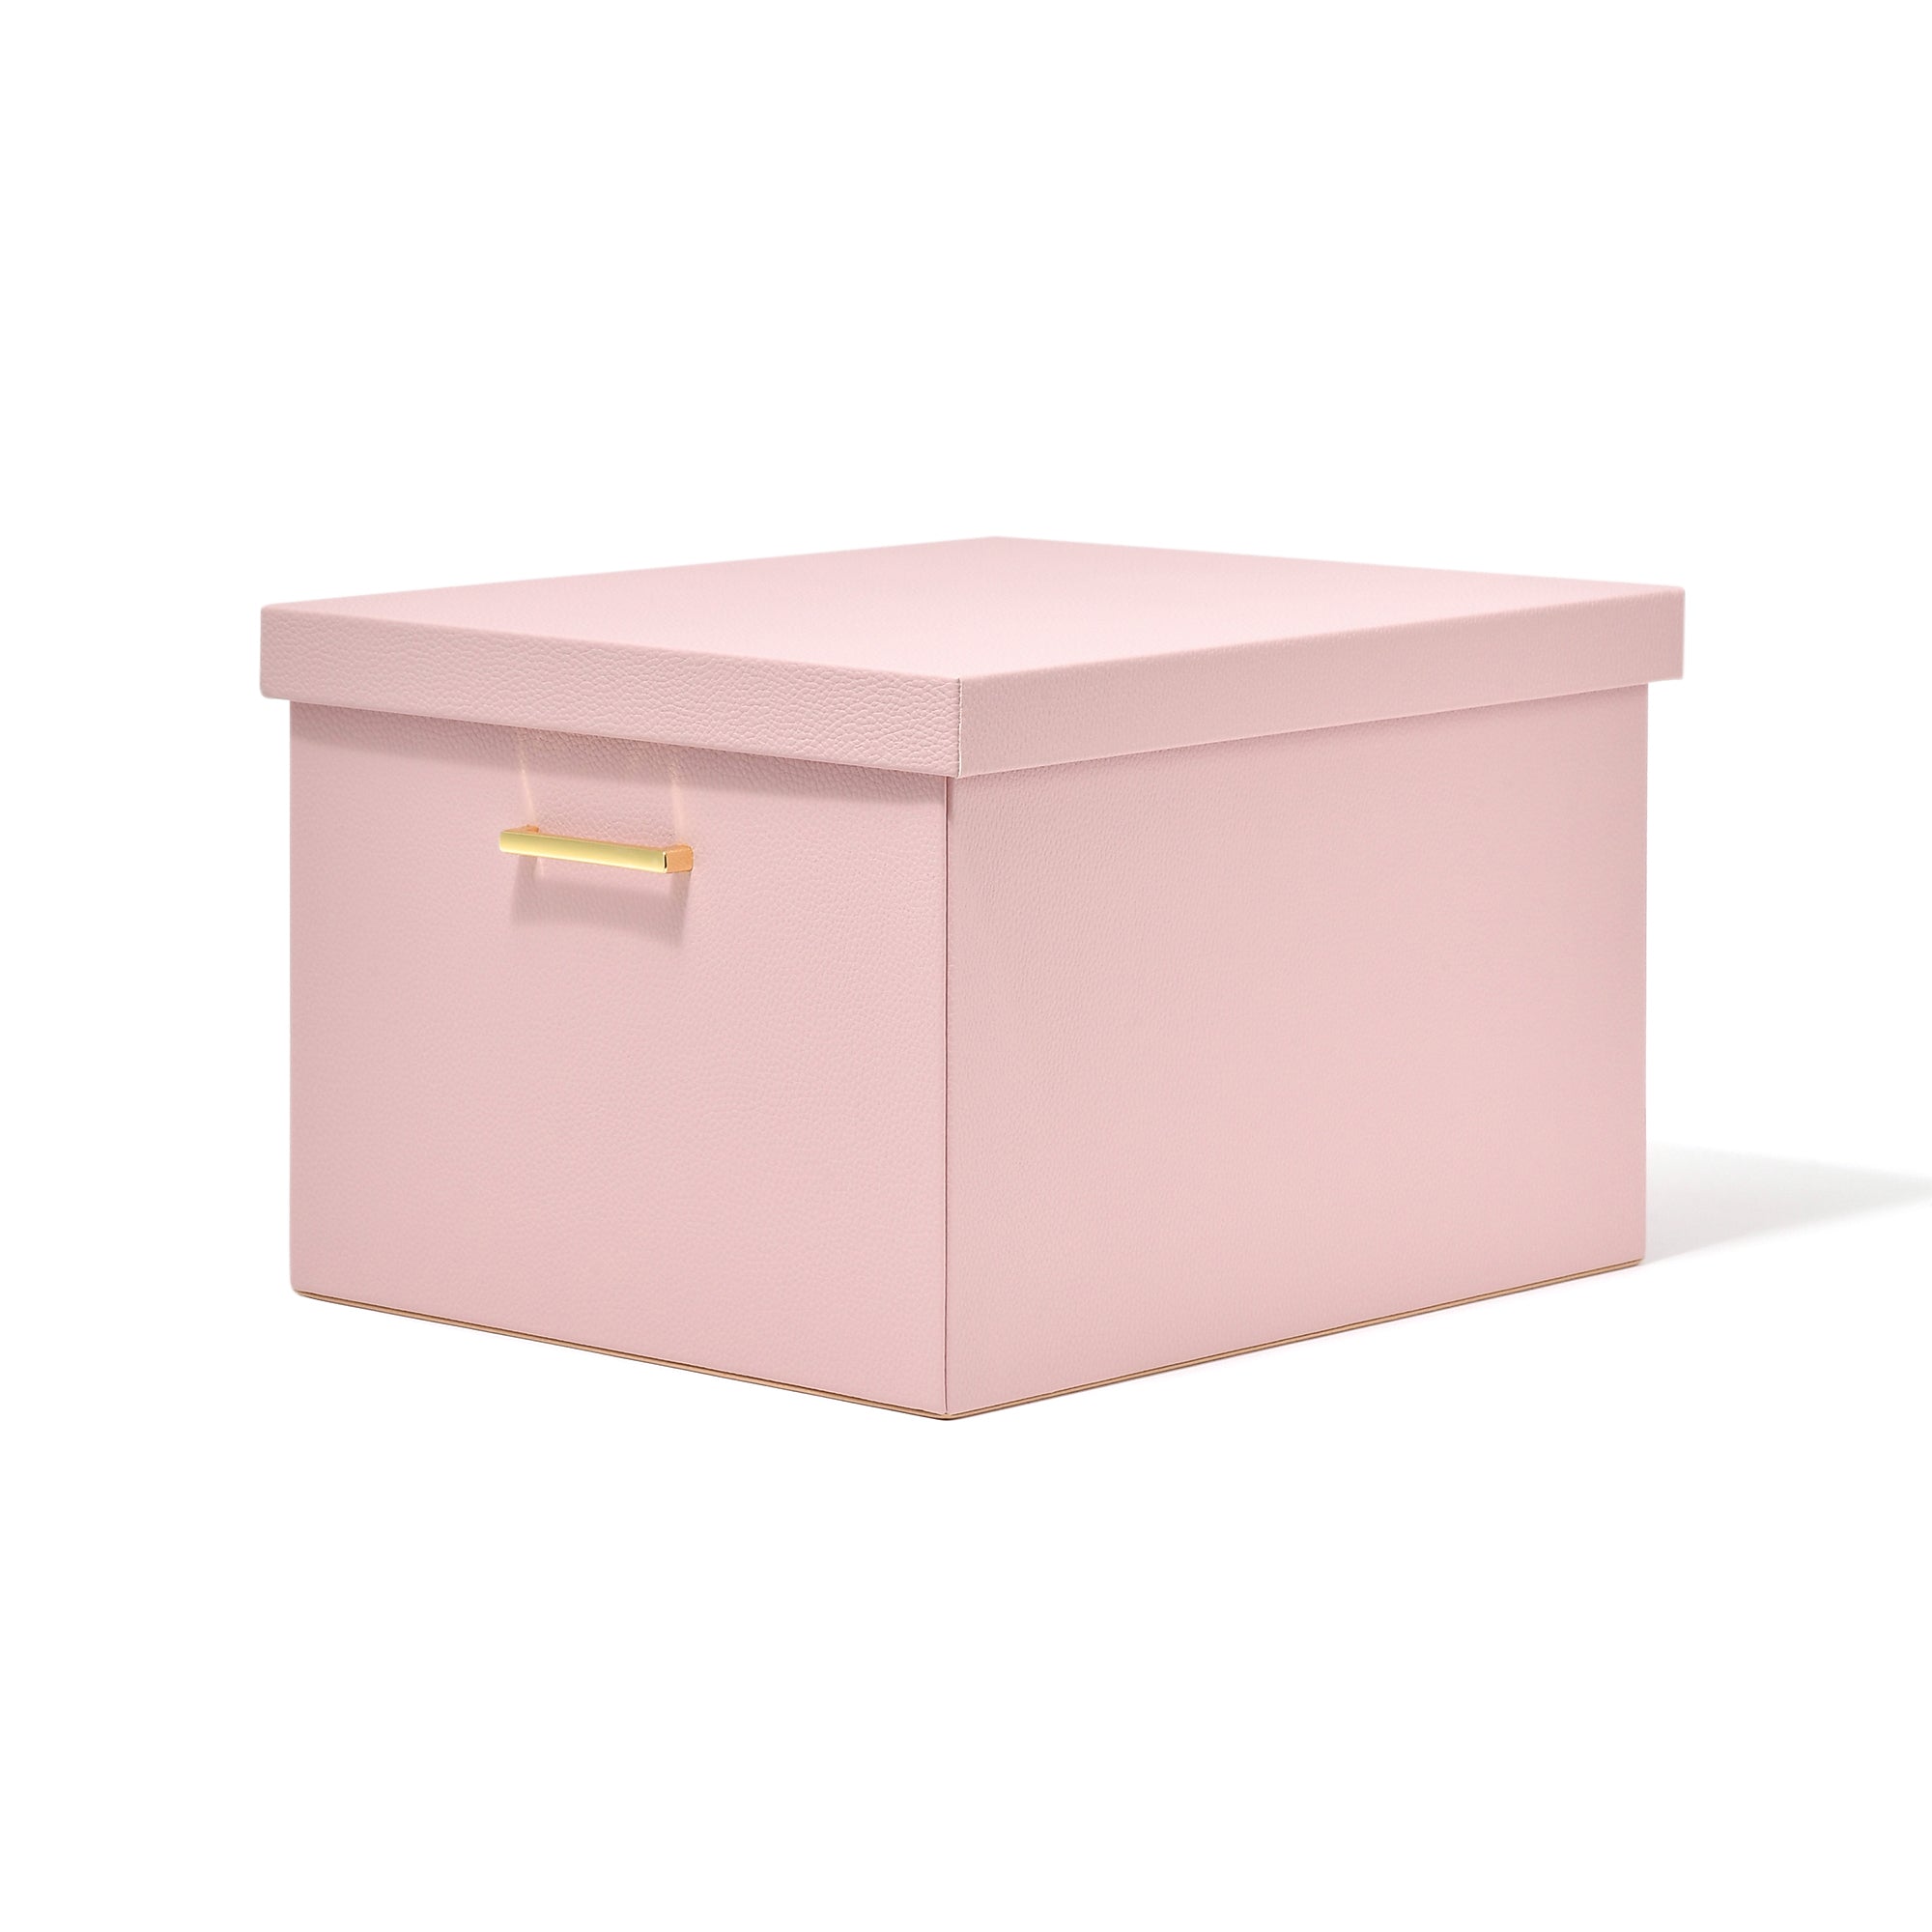 프랑프랑 일본 프리레 대형 박스 300×400 핑크